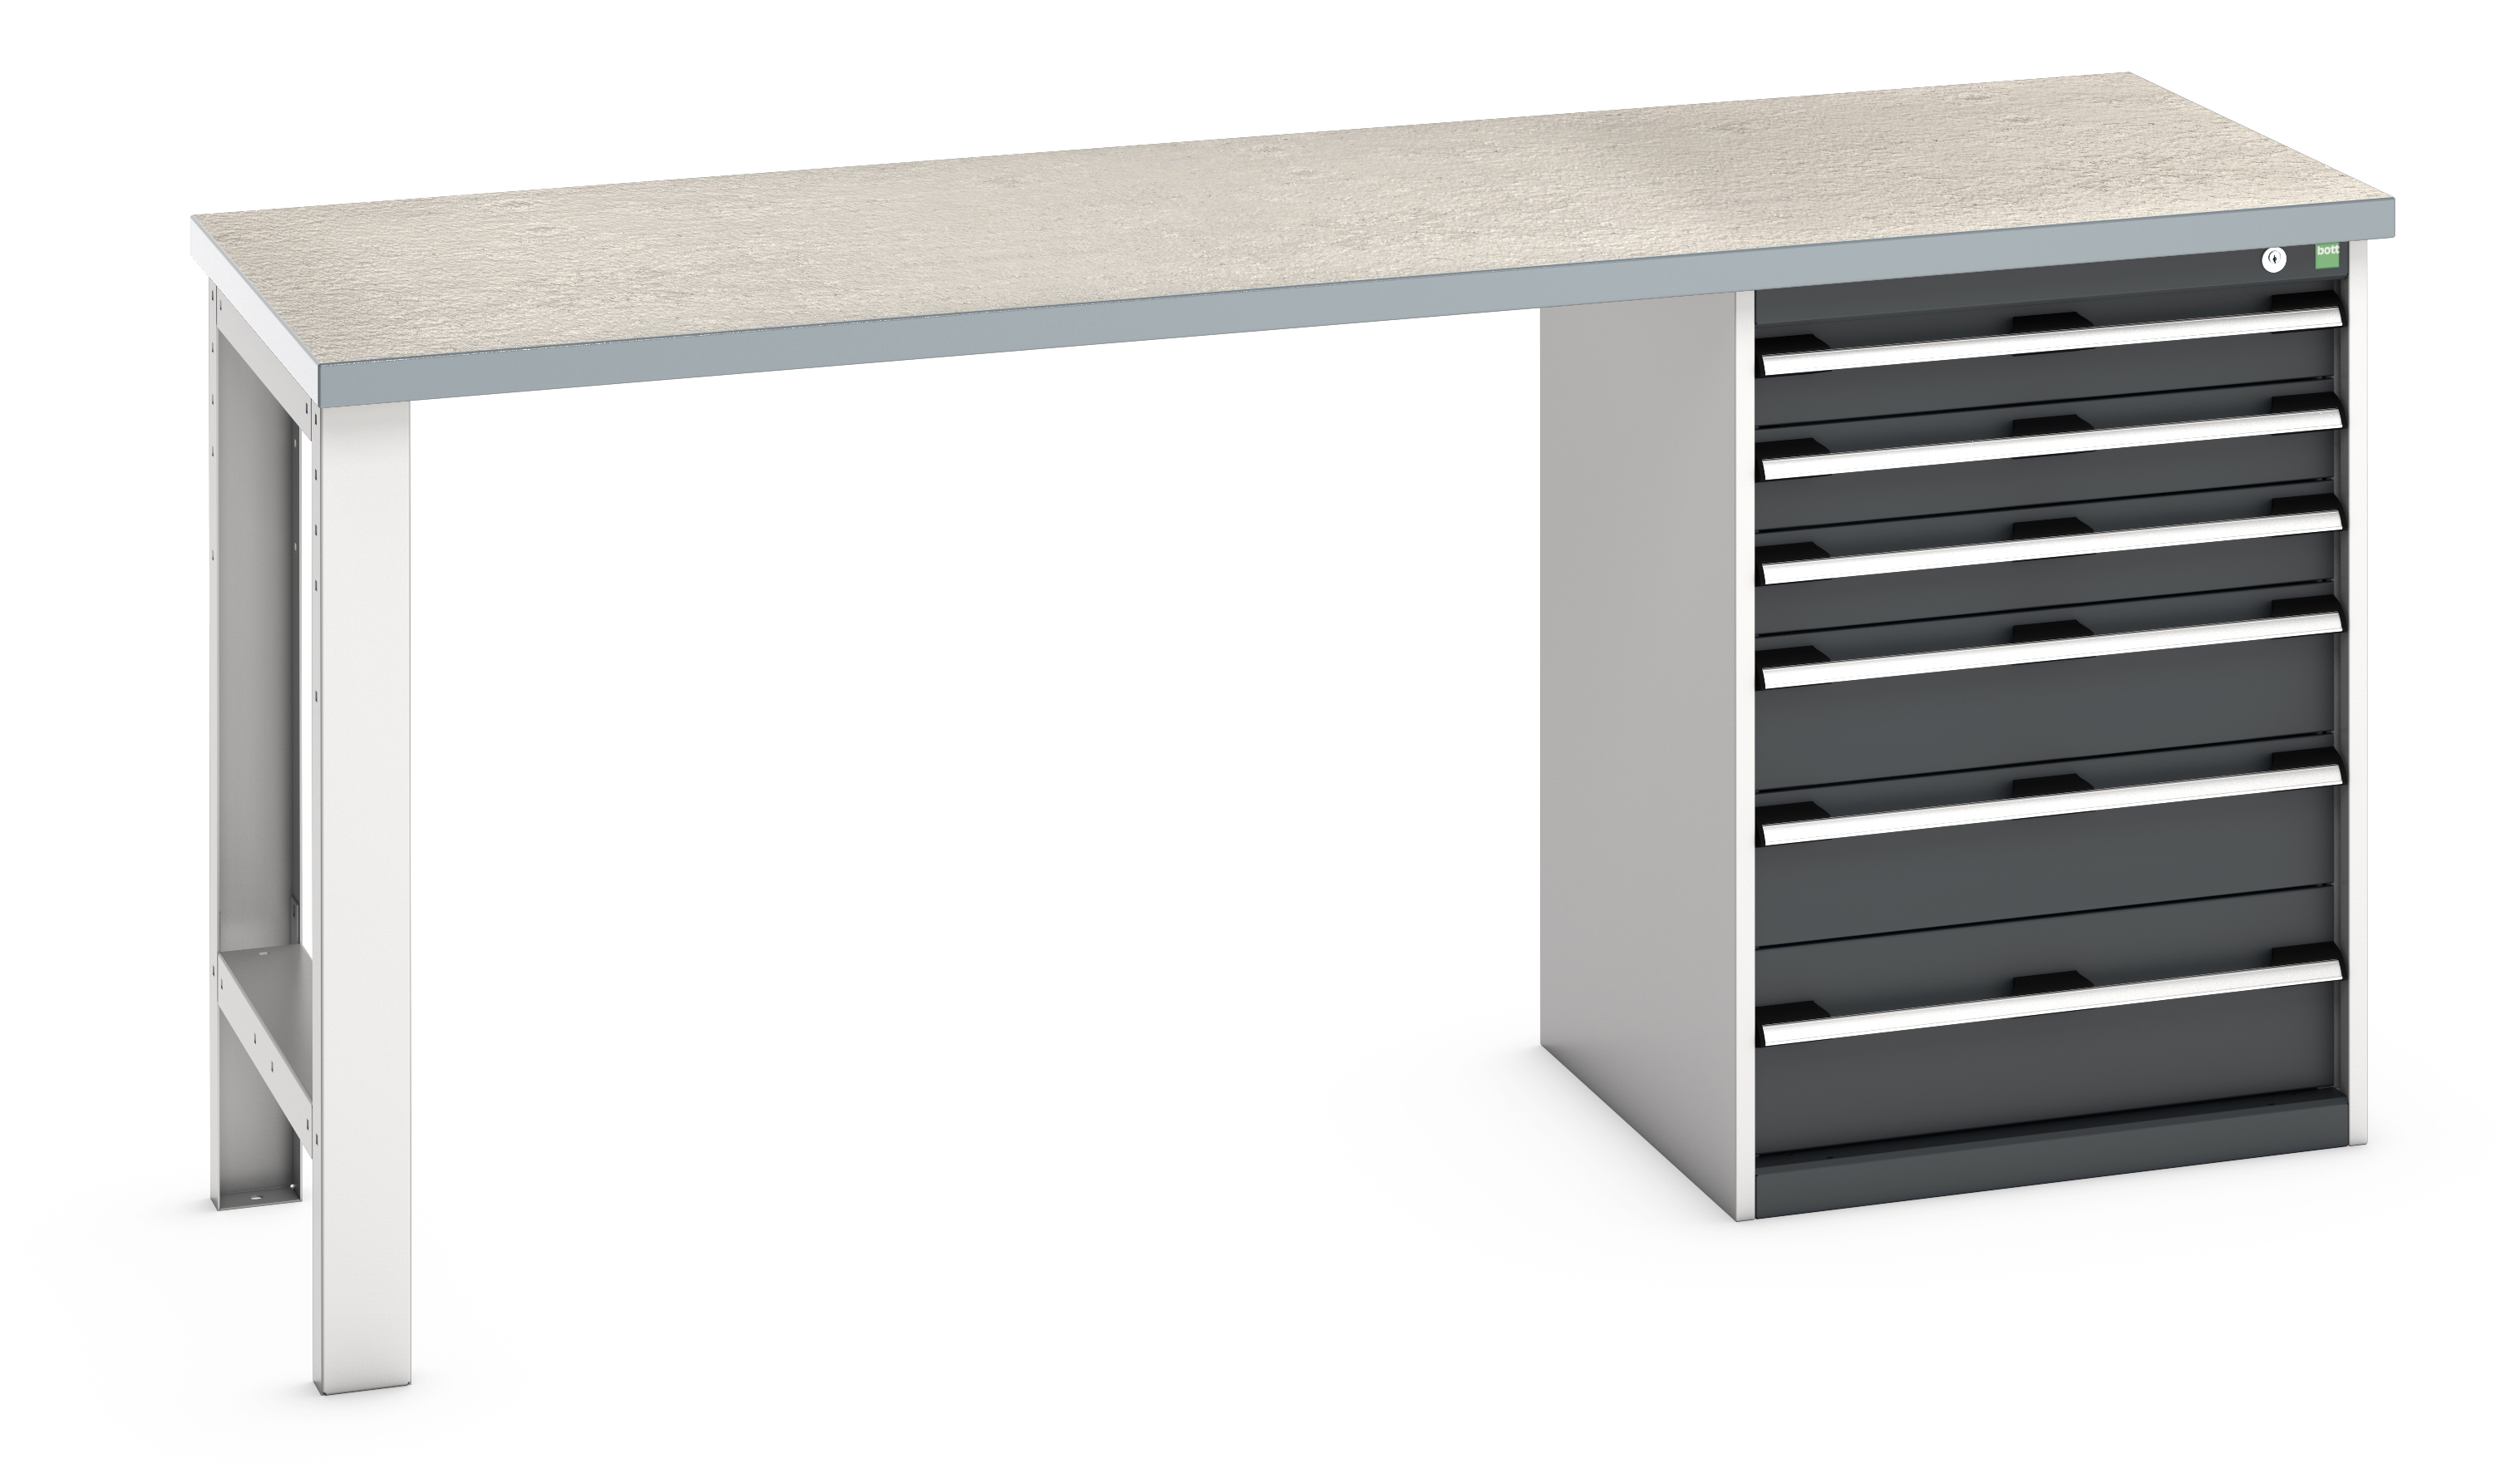 Bott Cubio Pedestal Bench With 6 Drawer Cabinet - 41003495.19V